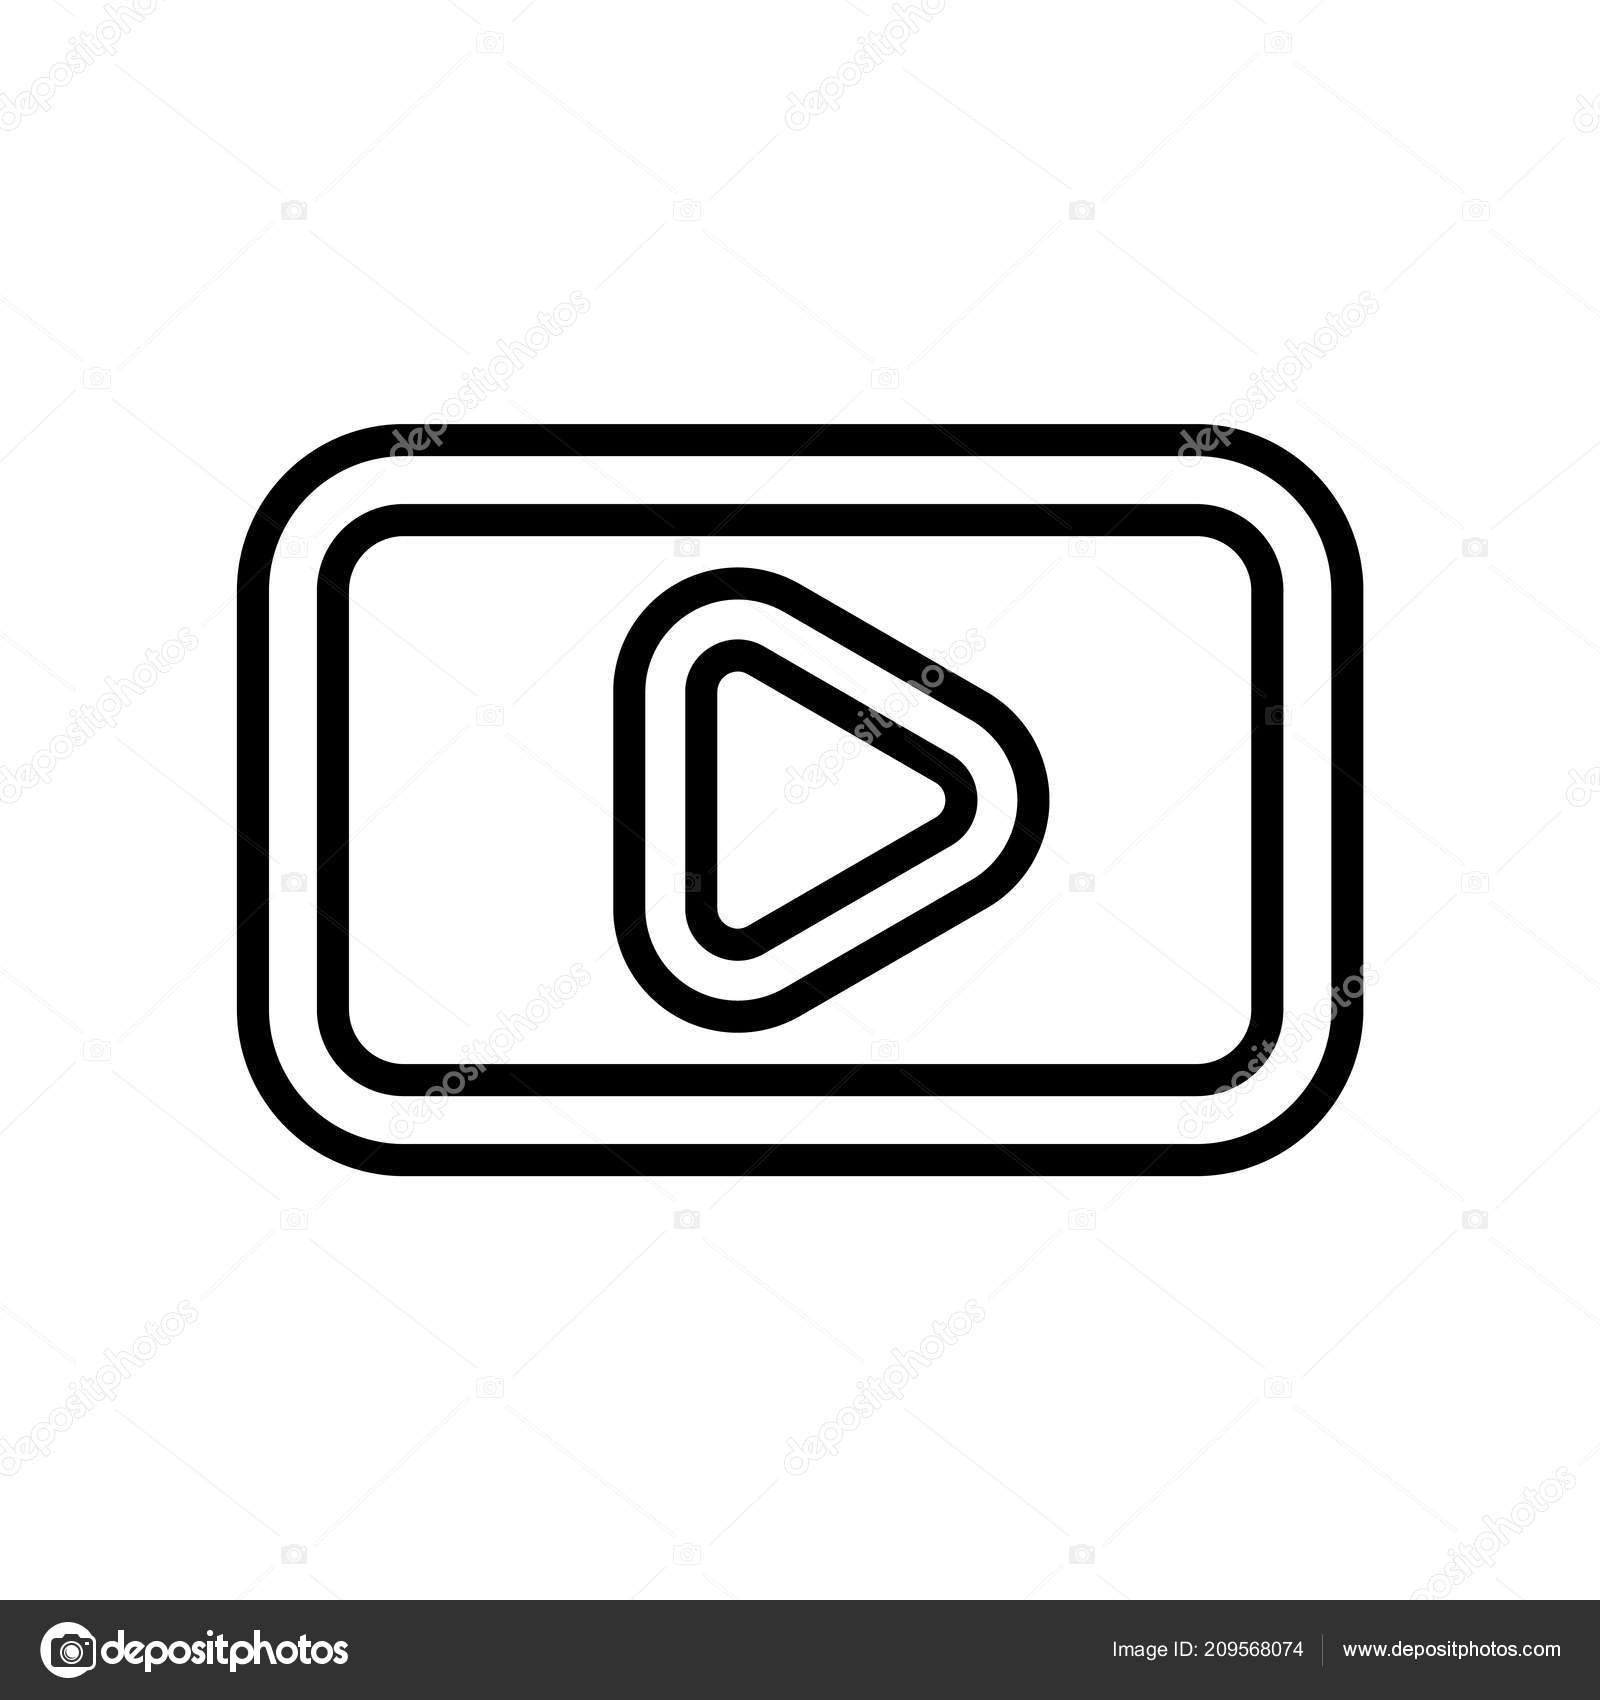 Tuyệt vời! Bạn đang tiếp cận được hình ảnh Vector của logo Youtube trên nền trắng cực kỳ giản đơn và sáng tạo. Thiết kế này sẽ khiến bạn phải ngợi khen tài năng của những người đứng sau và hứa hẹn đem lại trải nghiệm tốt nhất cho người dùng. Tìm hiểu ngay để được chiêm ngưỡng trọn vẹn vẻ đẹp của logo từng góc cạnh.